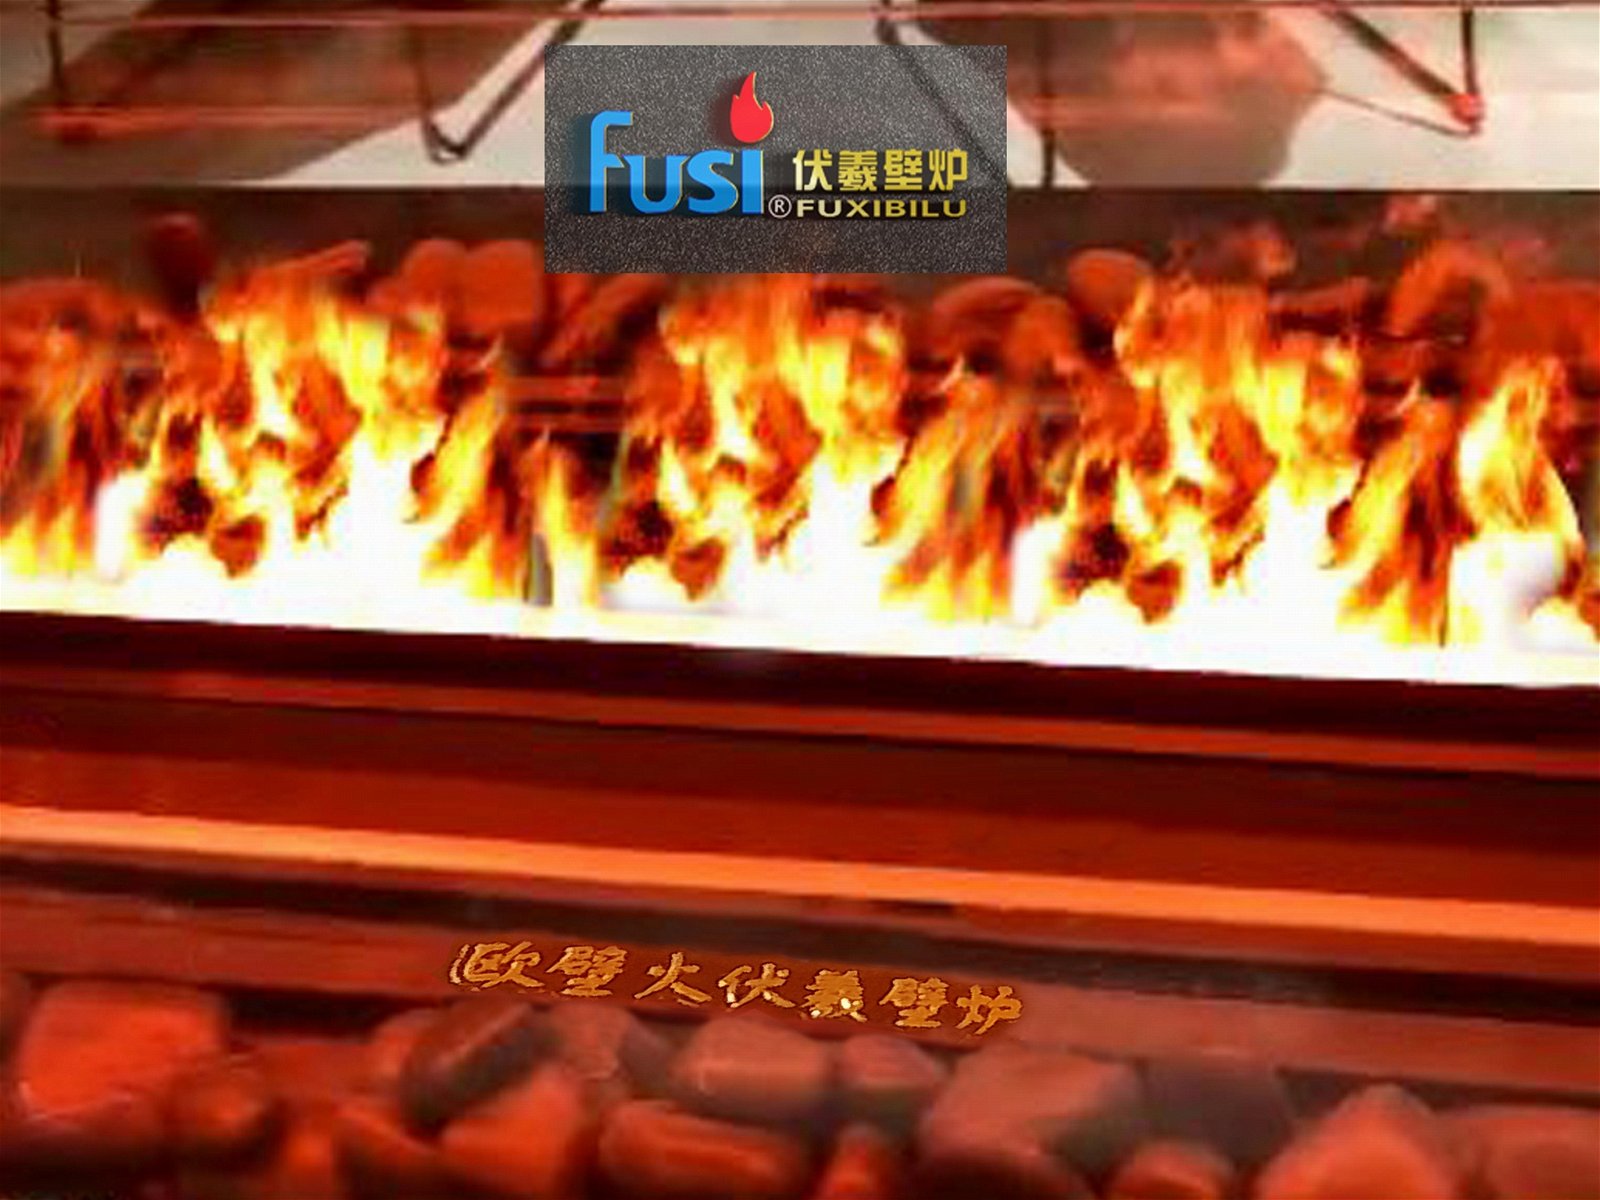 上海歐壁火伏羲3d火焰霧化燃氣酒精燃木壁爐實業有限公司